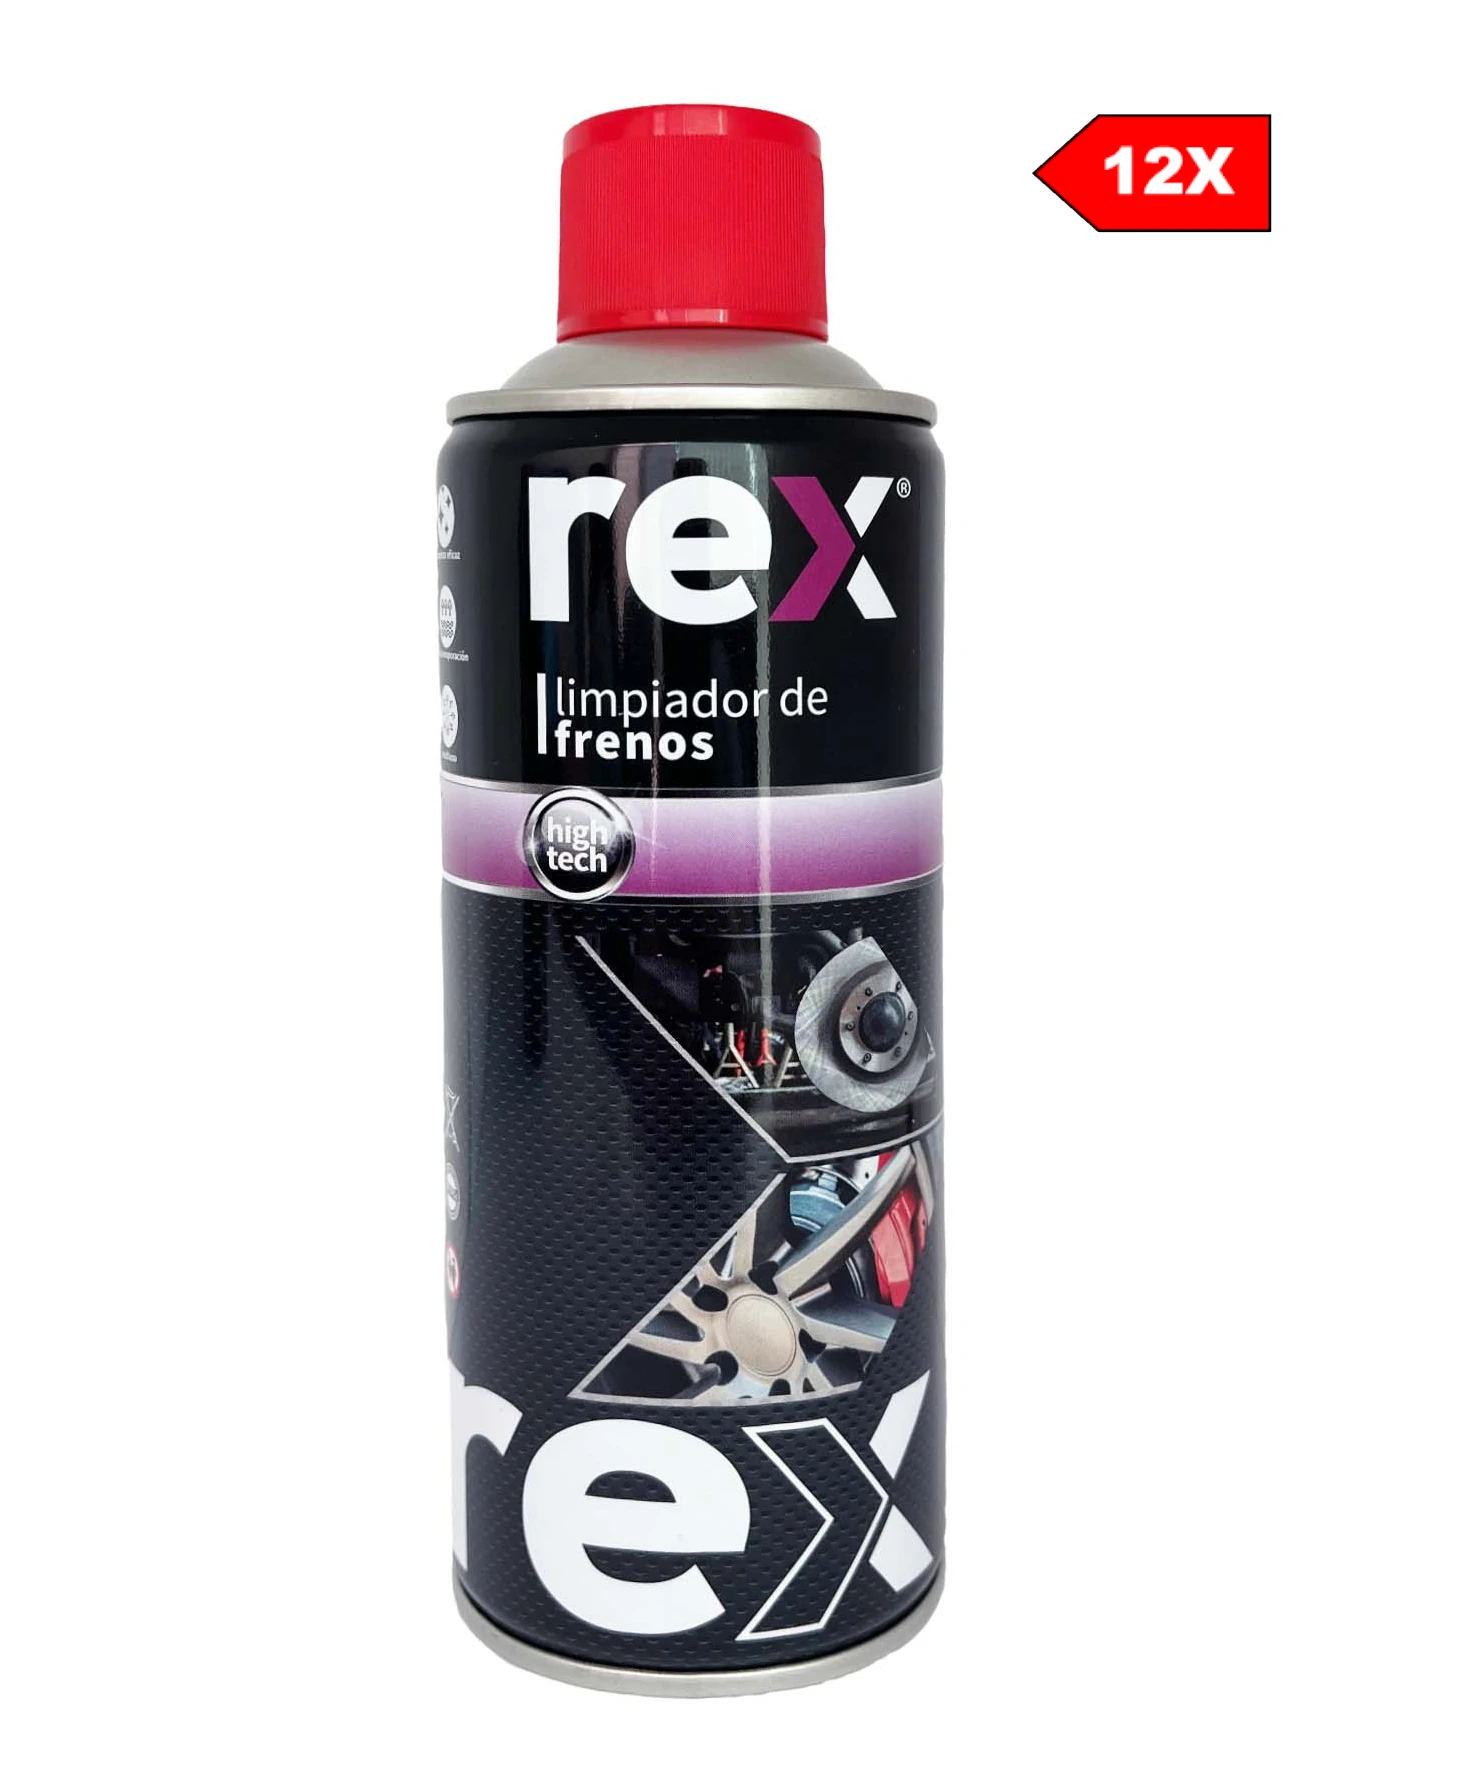 12x Rex Limpiador de Frenos